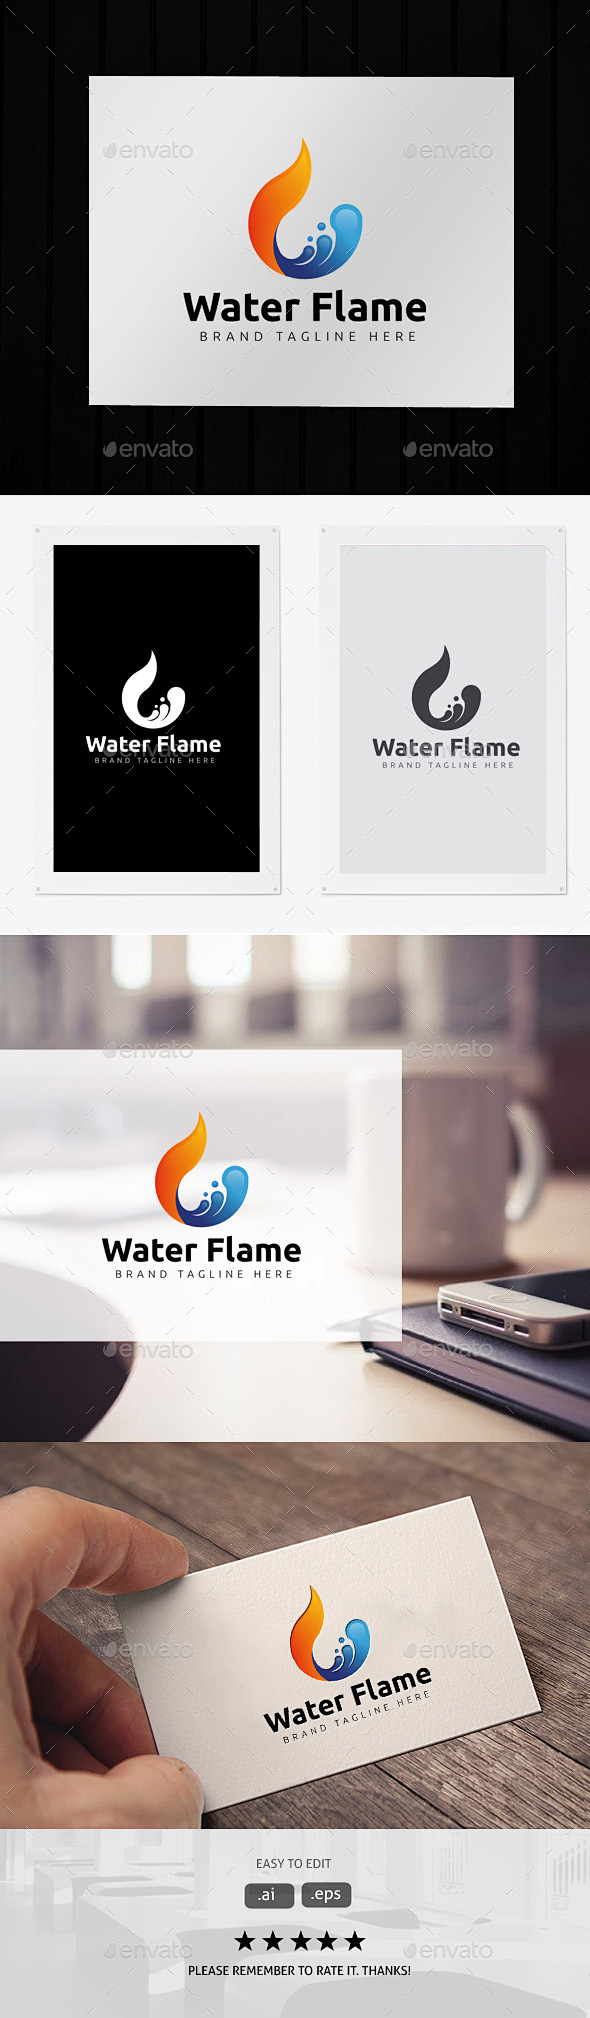 水火焰——符号标志模板Water Fla...